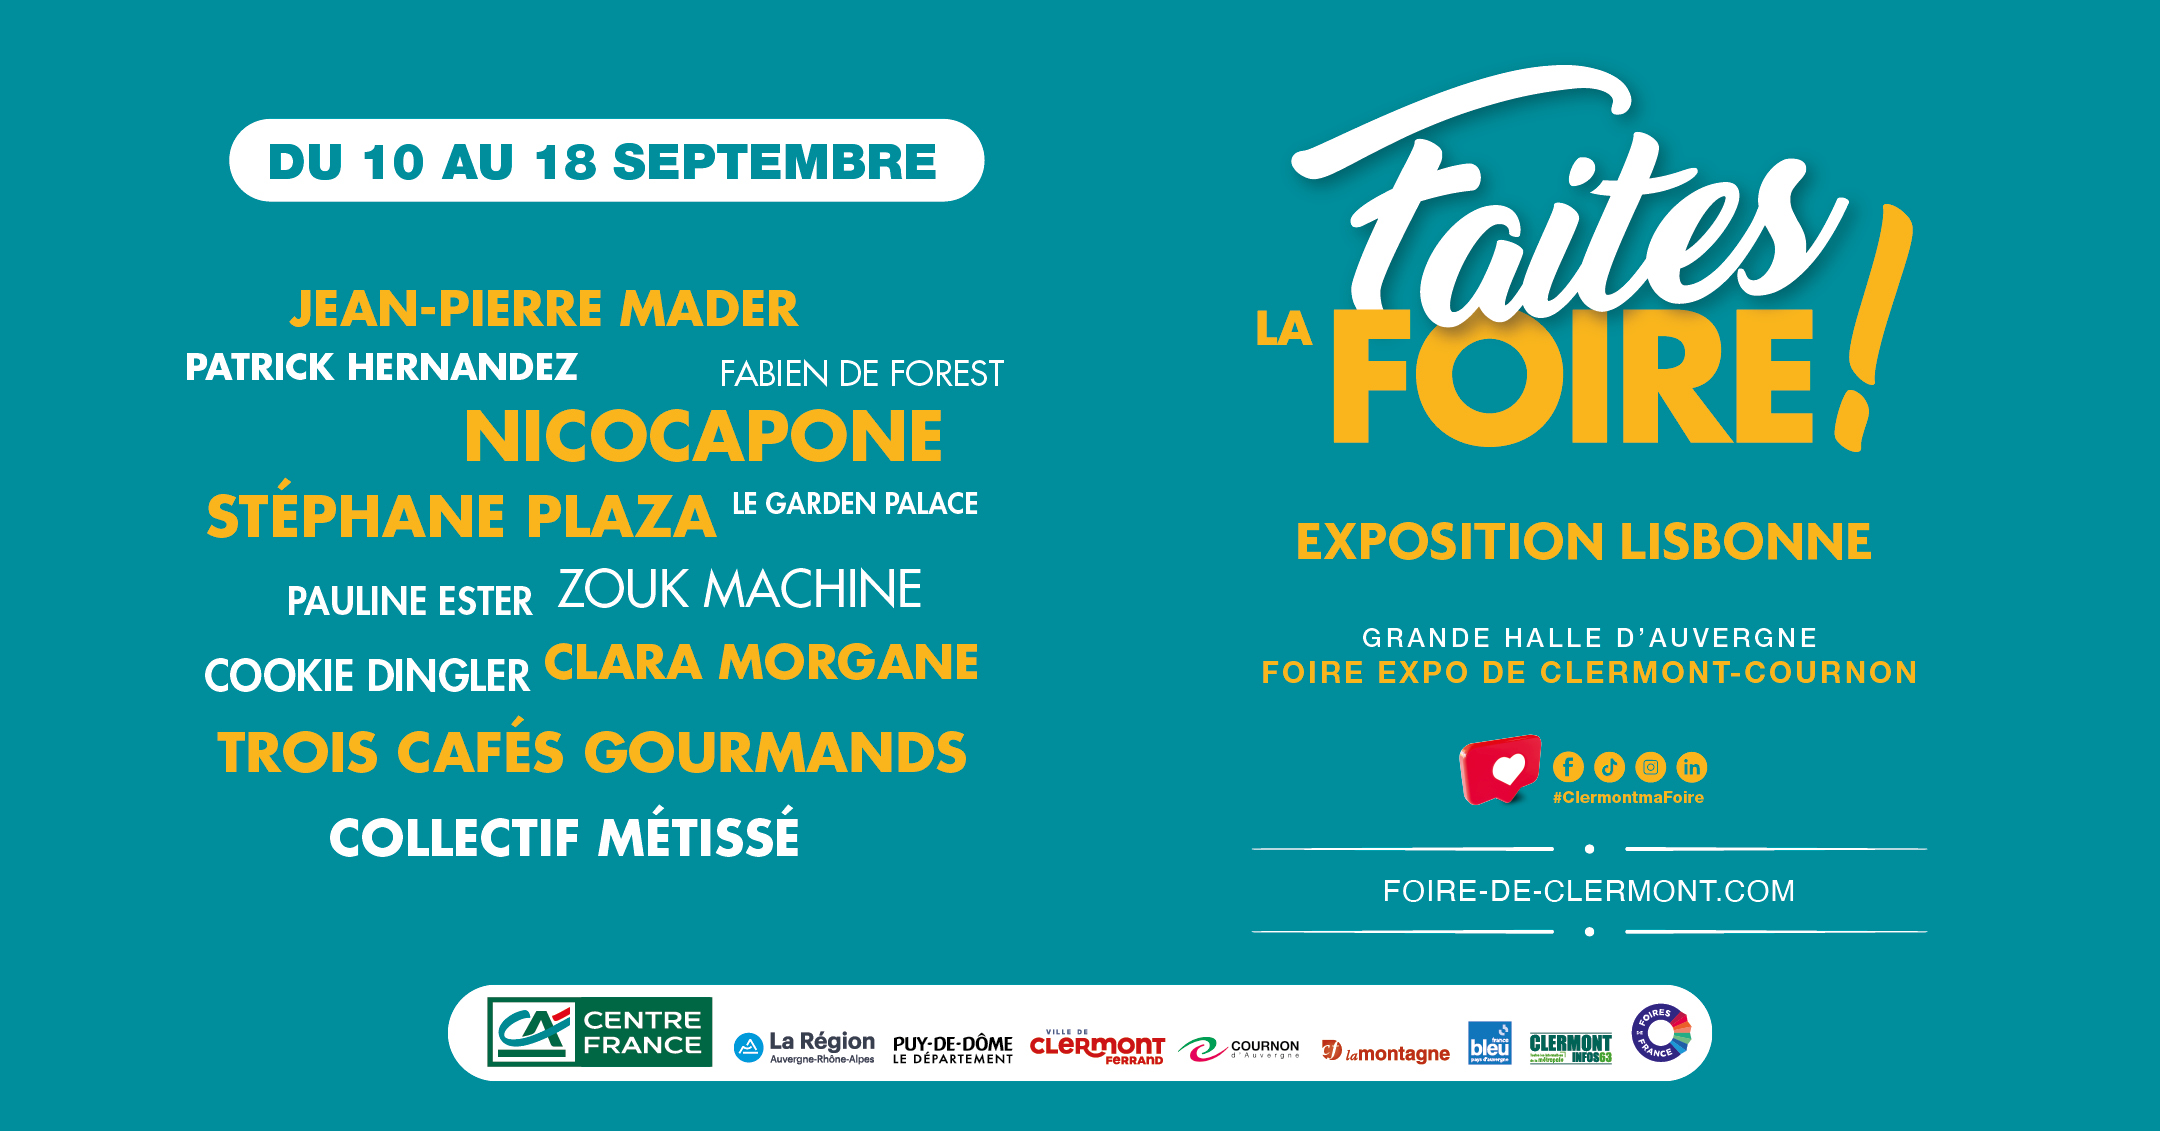 Foire Exposition de Clermont-Cournon - Auvergne-Rhône-Alpes